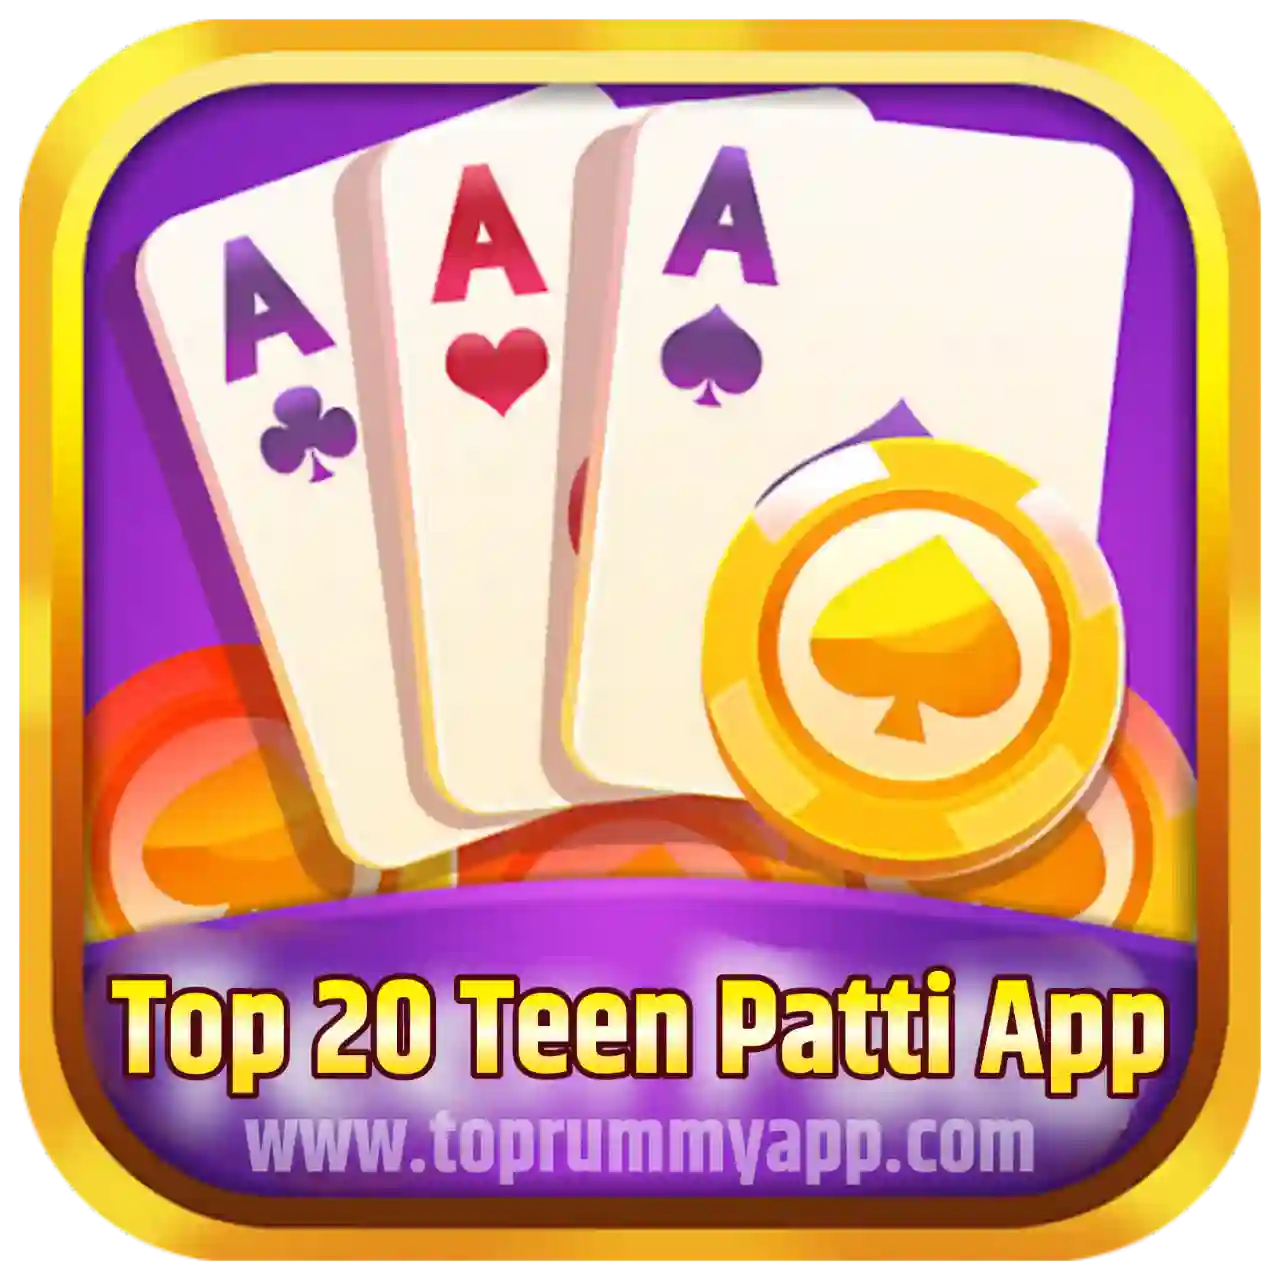 Top 20 Teen Patti App List - All Teen Patti App List 41 Bonus